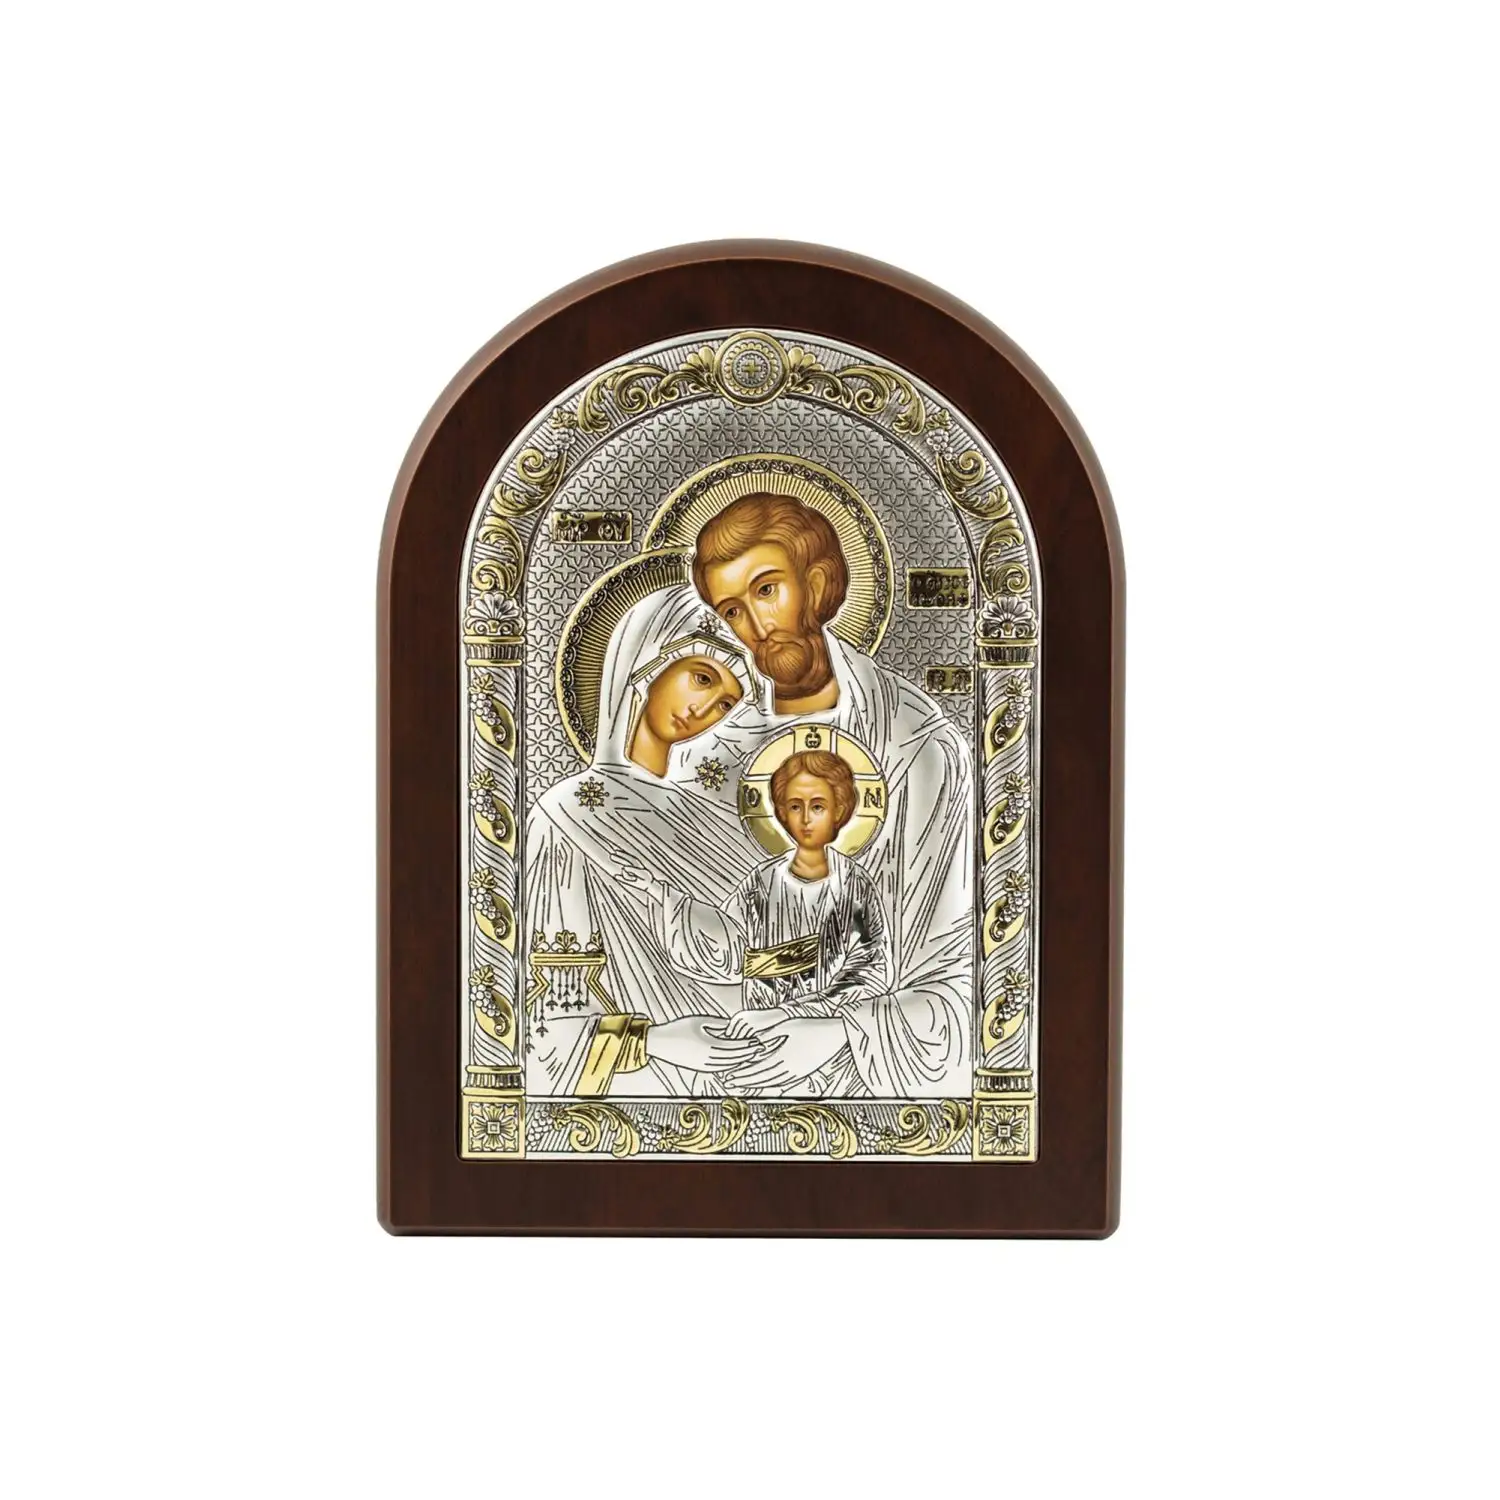 Икона Святое Семейство (12*16) икона святое семейство размер 8 5 х 12 5 см